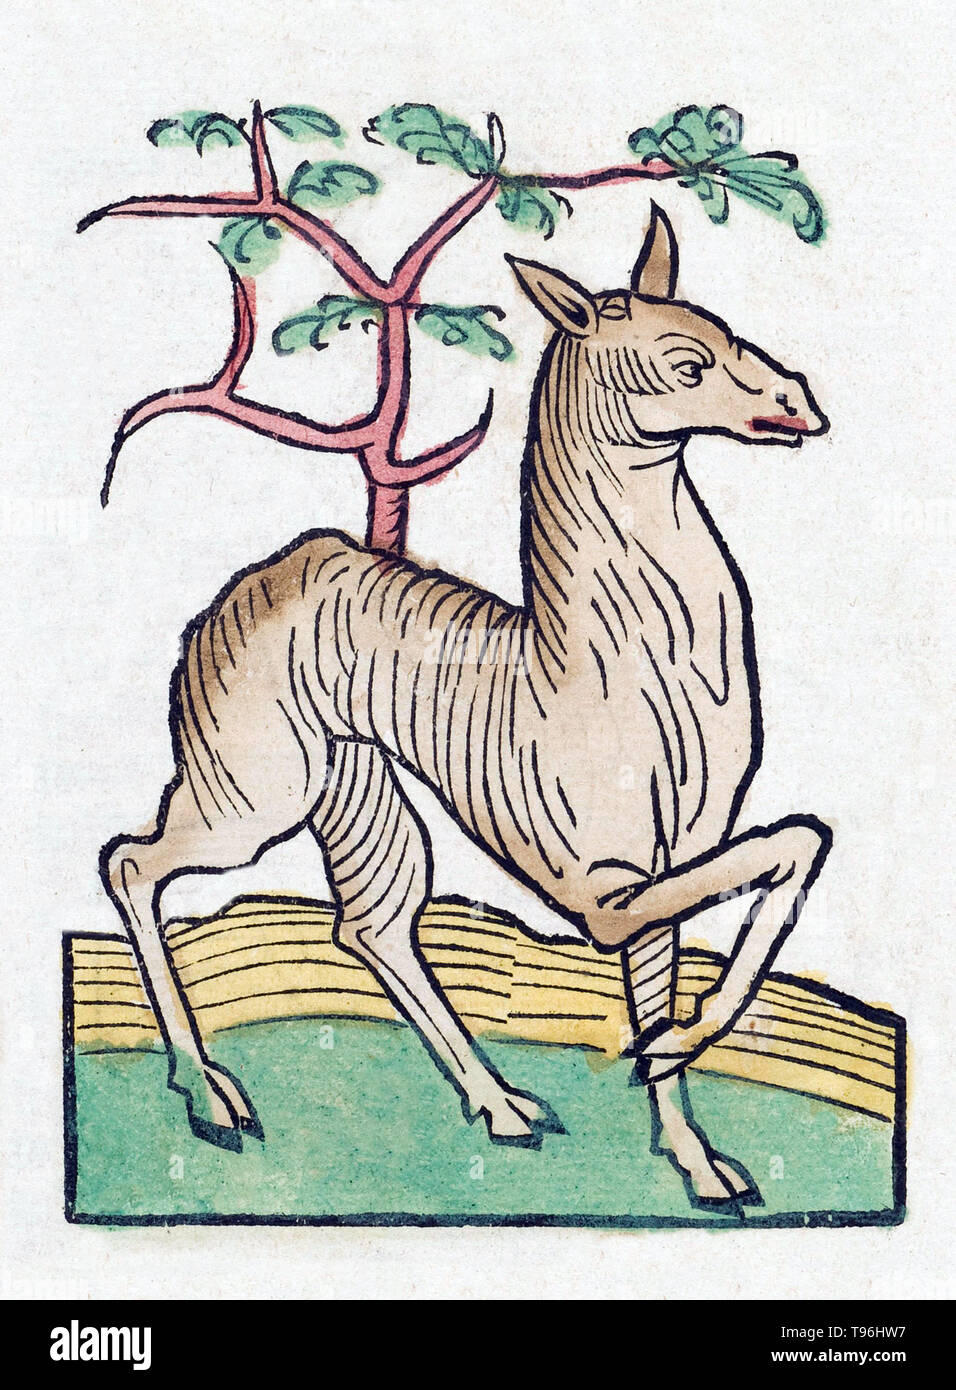 Gazelle femelle. L'Hortus Sanitatis (Jardin de la santé), la première encyclopédie d'histoire naturelle, a été publié par Jacob Meydenbach en Allemagne, 1491. Il décrit des plantes et animaux (à la fois réelle et mythique) avec minéraux et de divers métiers, avec leur valeur thérapeutique et de la méthode de préparation. La gravure sur bois à la main, les illustrations sont stylisées mais souvent facilement reconnaissable. L'édition 1547. Banque D'Images